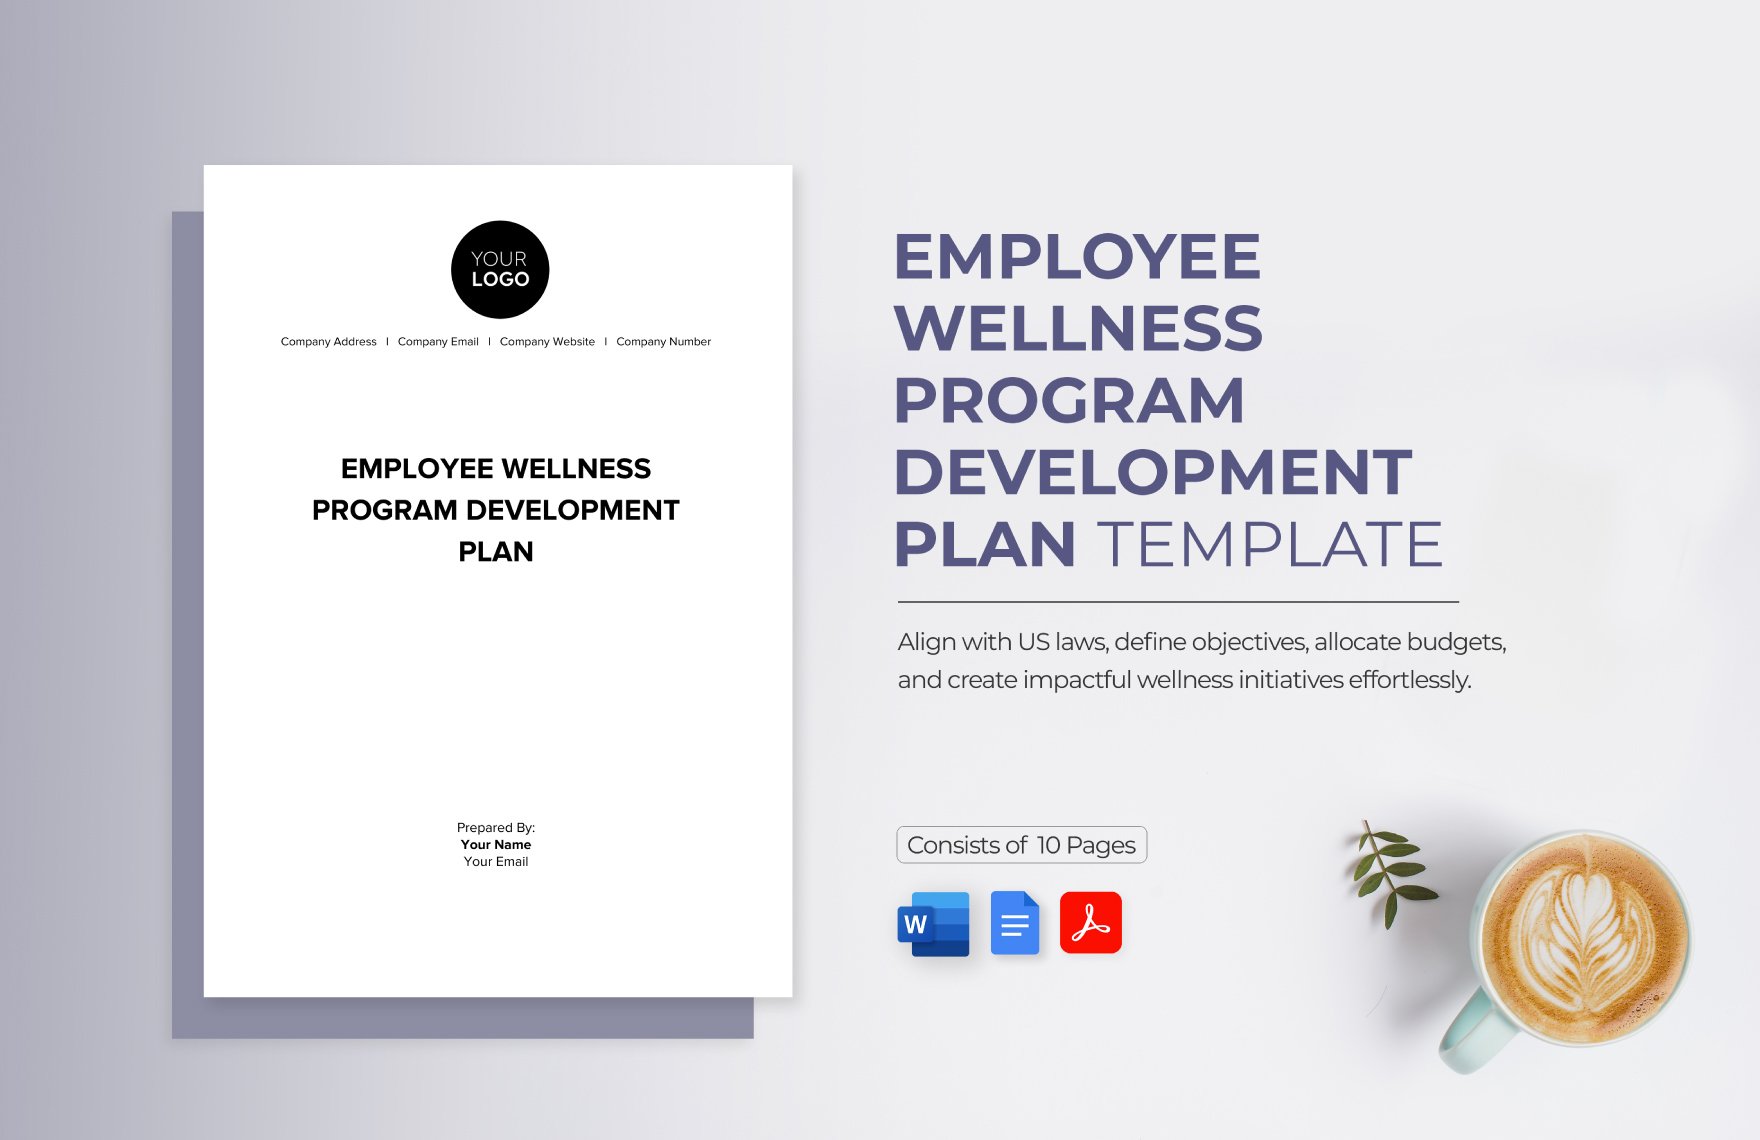 Employee Wellness Program Development Plan Template